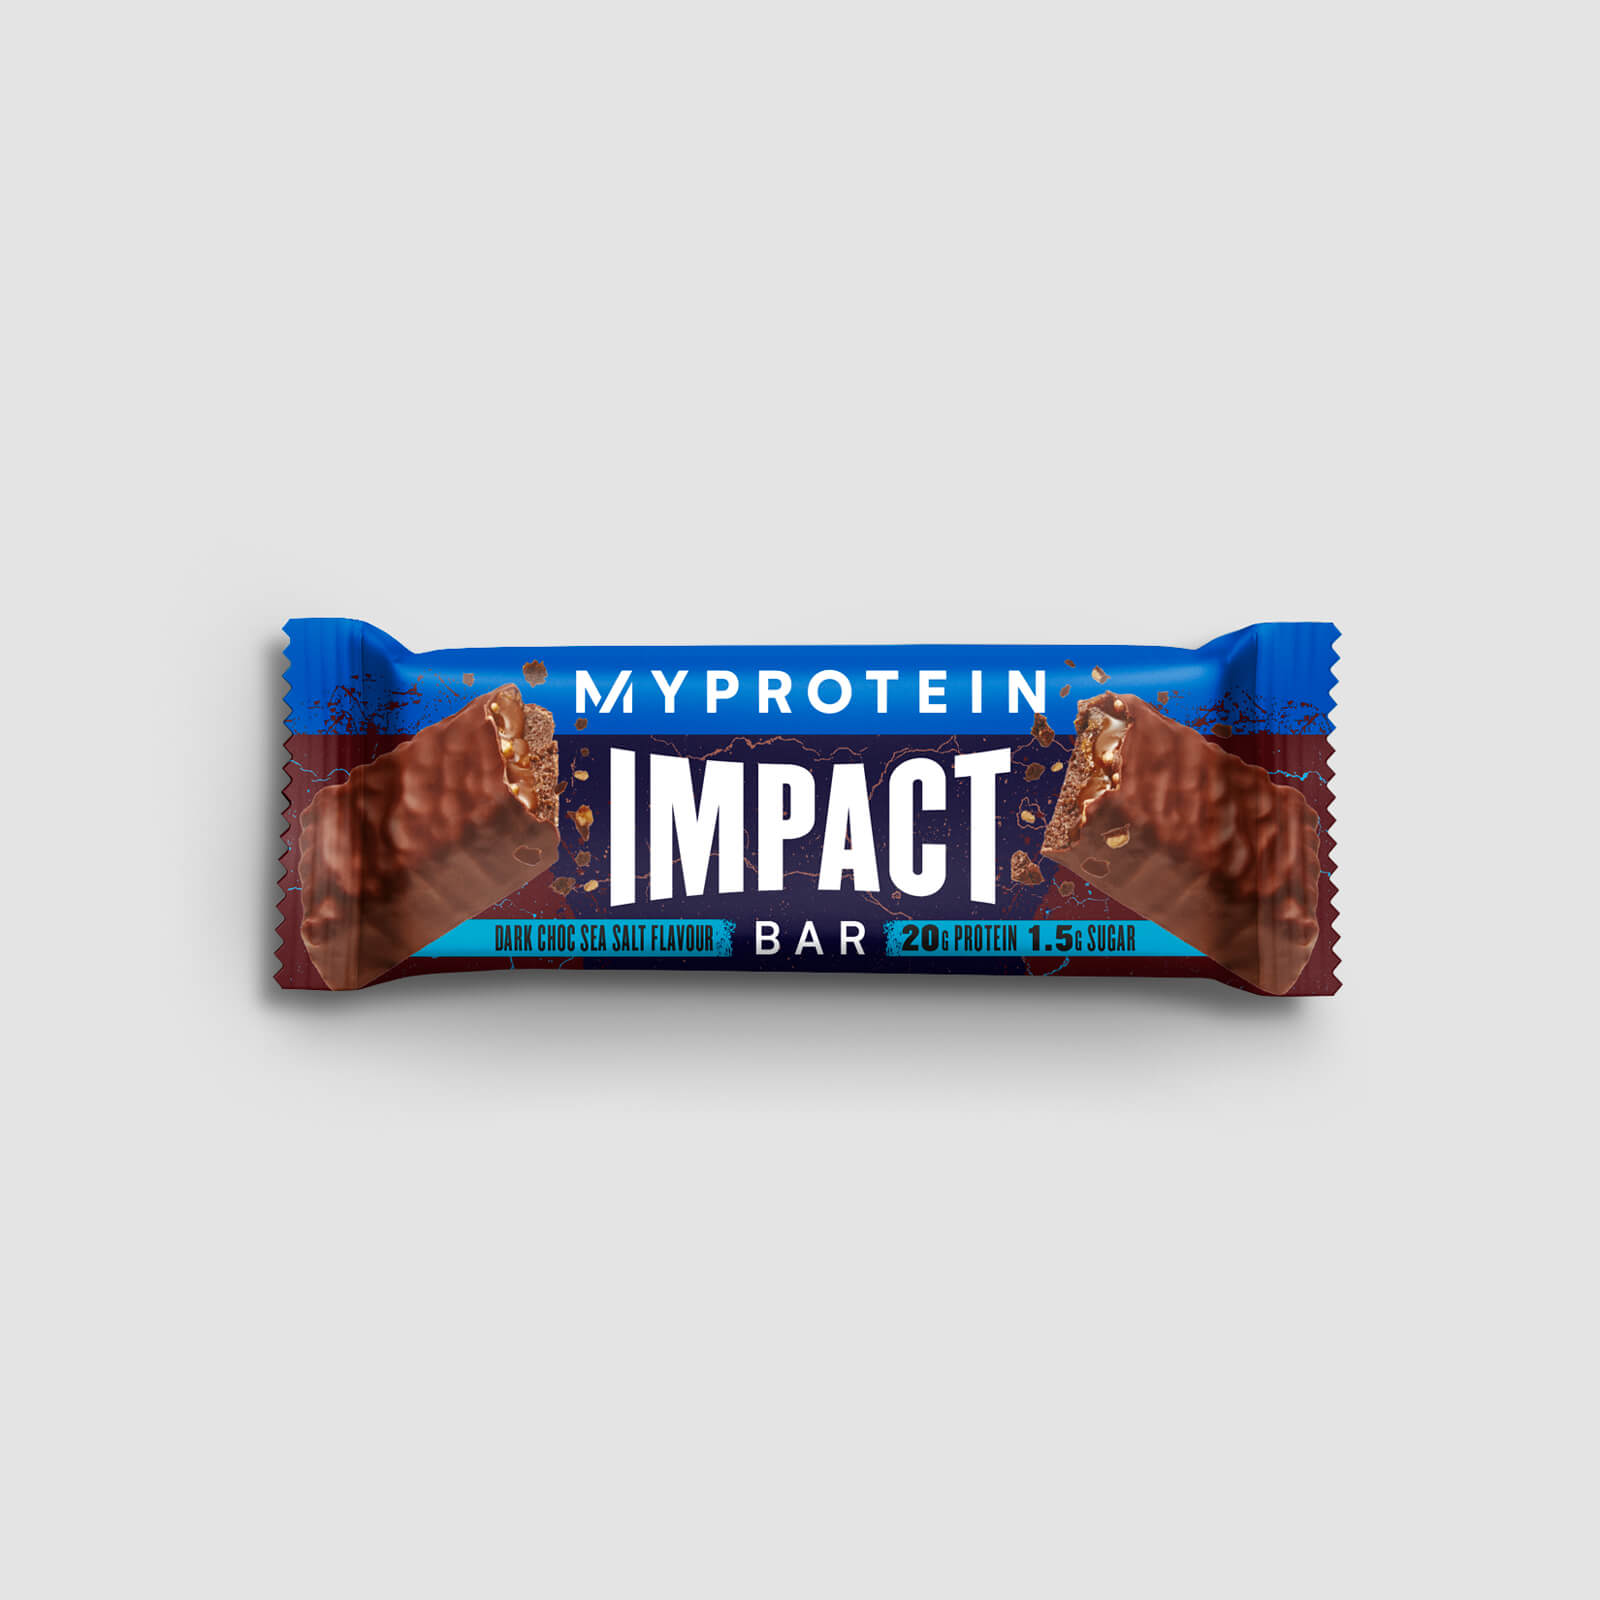 Myprotein Impact proteinbar - Dark Chocolate Sea Salt